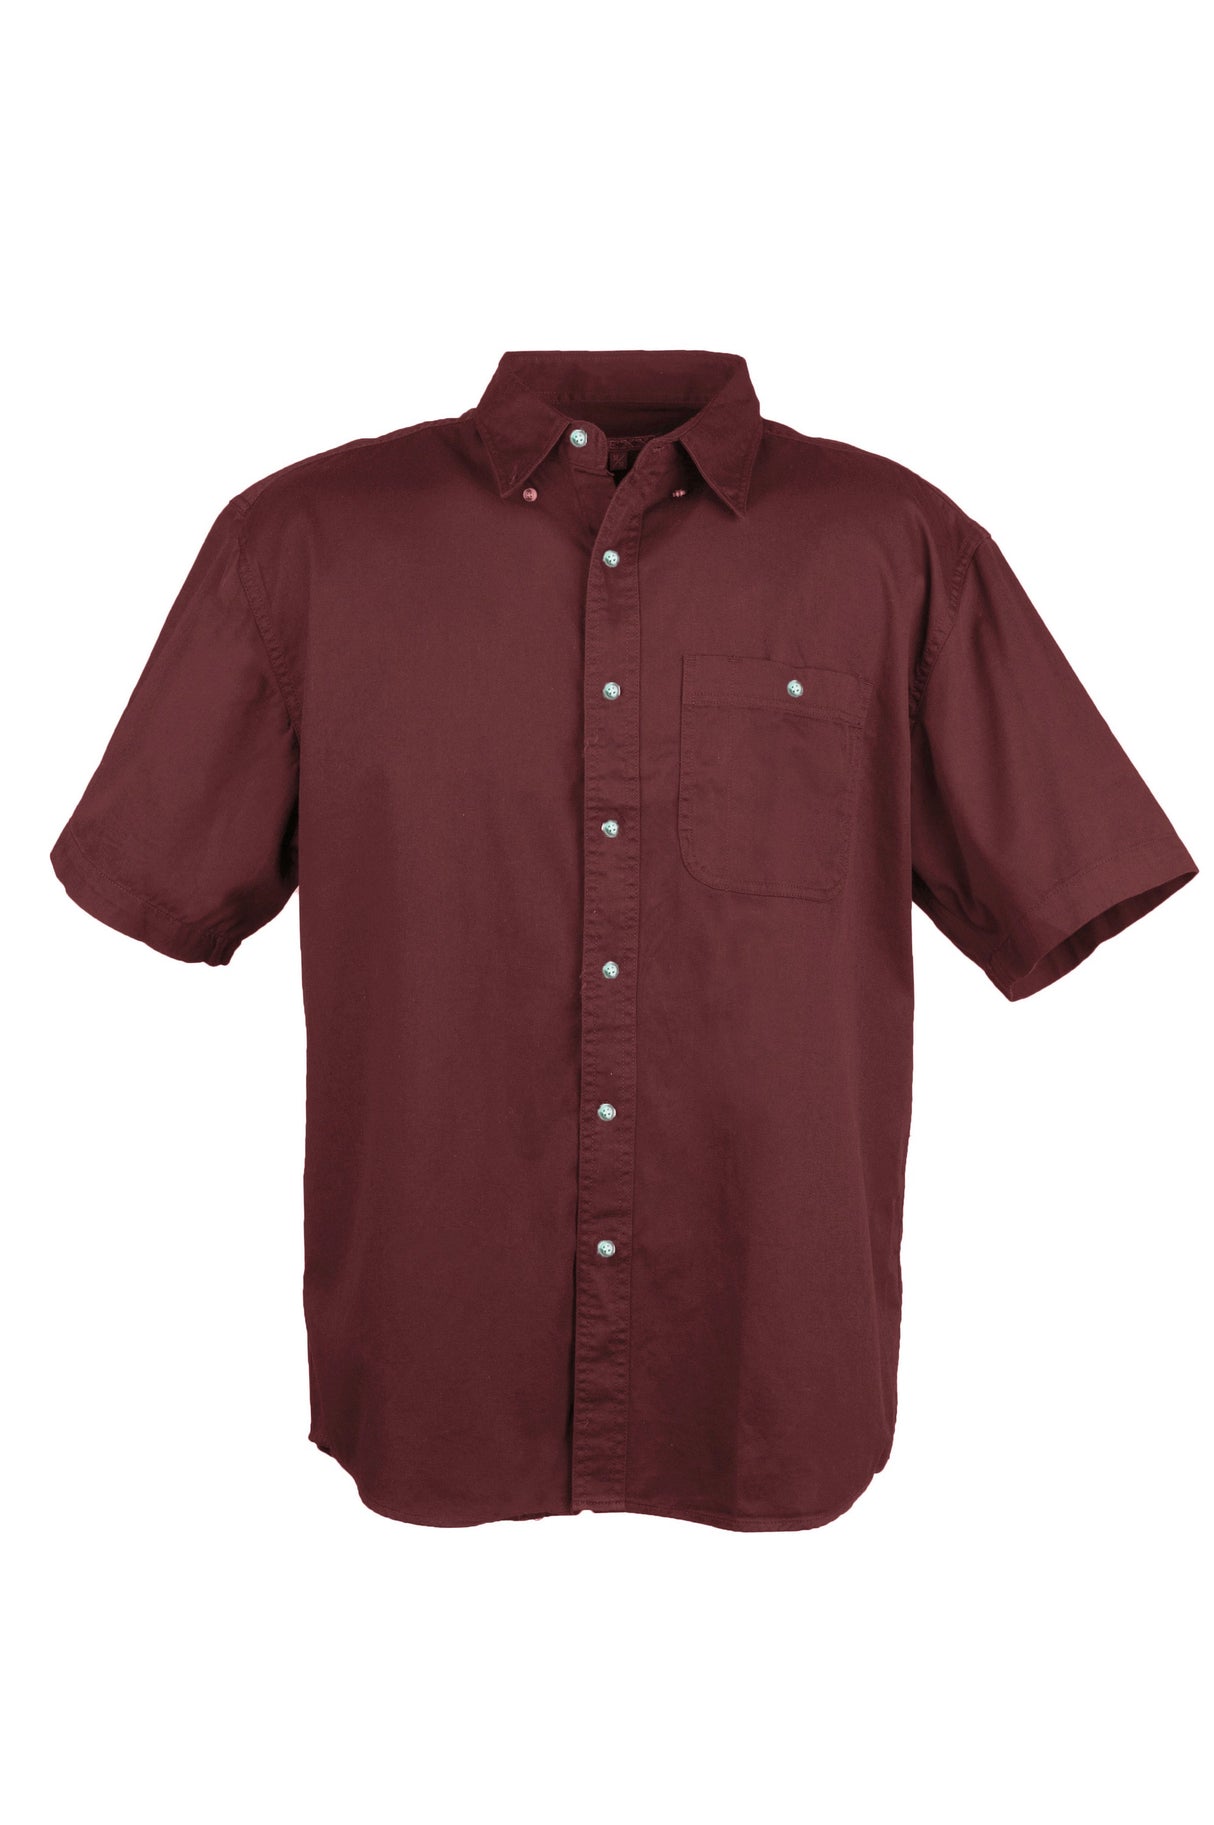 Men's 100% Cotton Twill Short Sleeve Shirt Tall (Mulberry Red) (LT-3XLT)